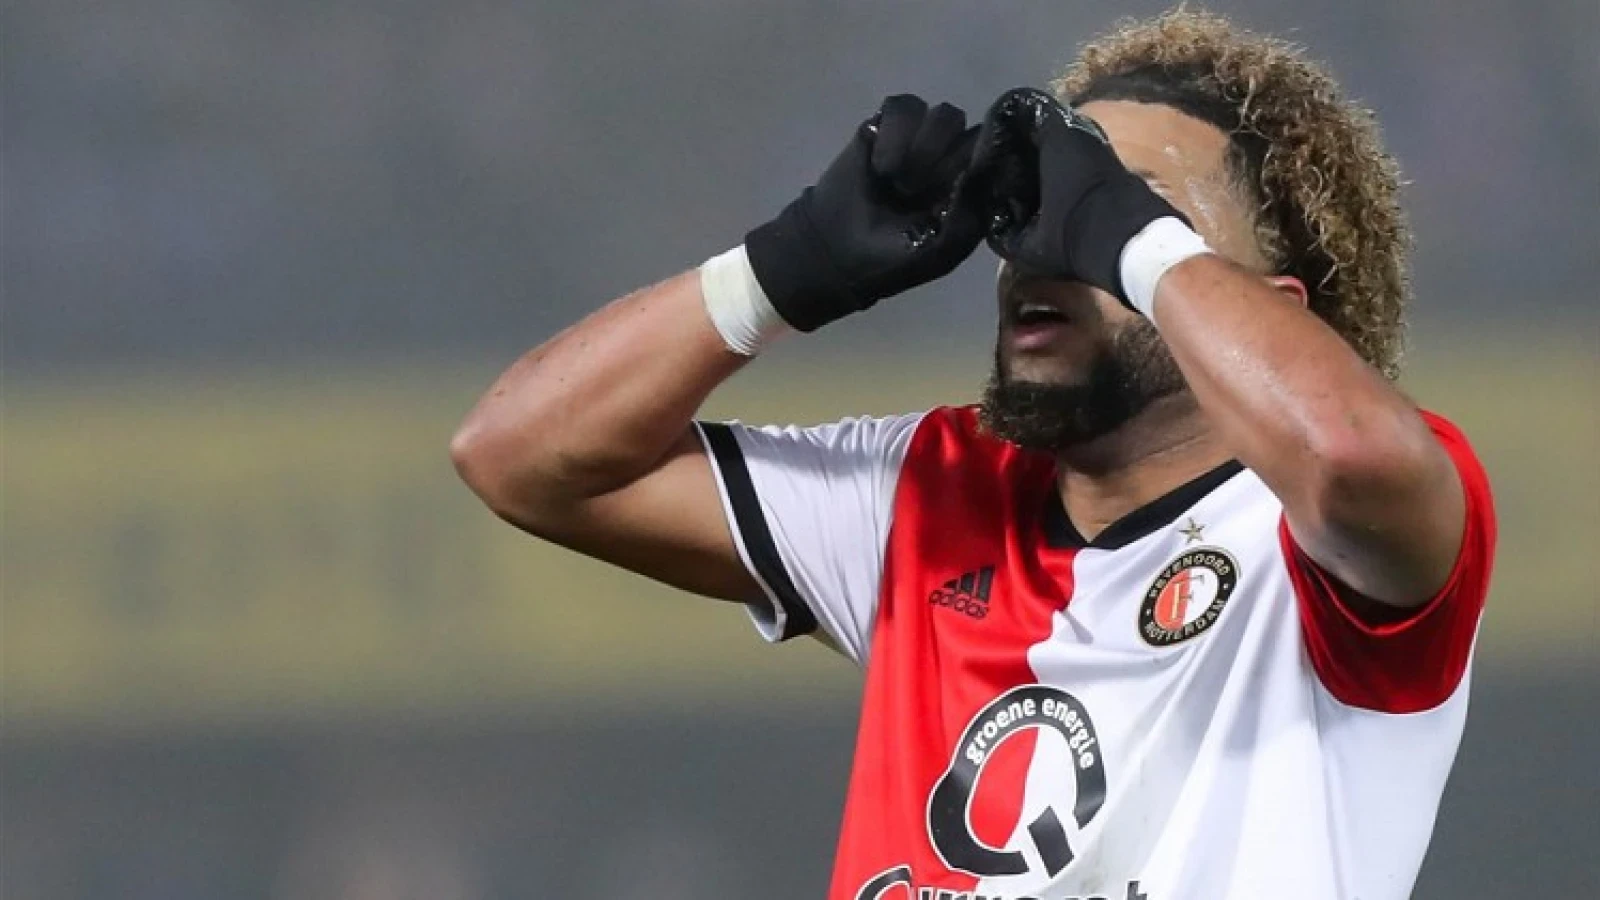 #PraatMee | Moet Feyenoord volle bak inzetten op goksite als sponsor?